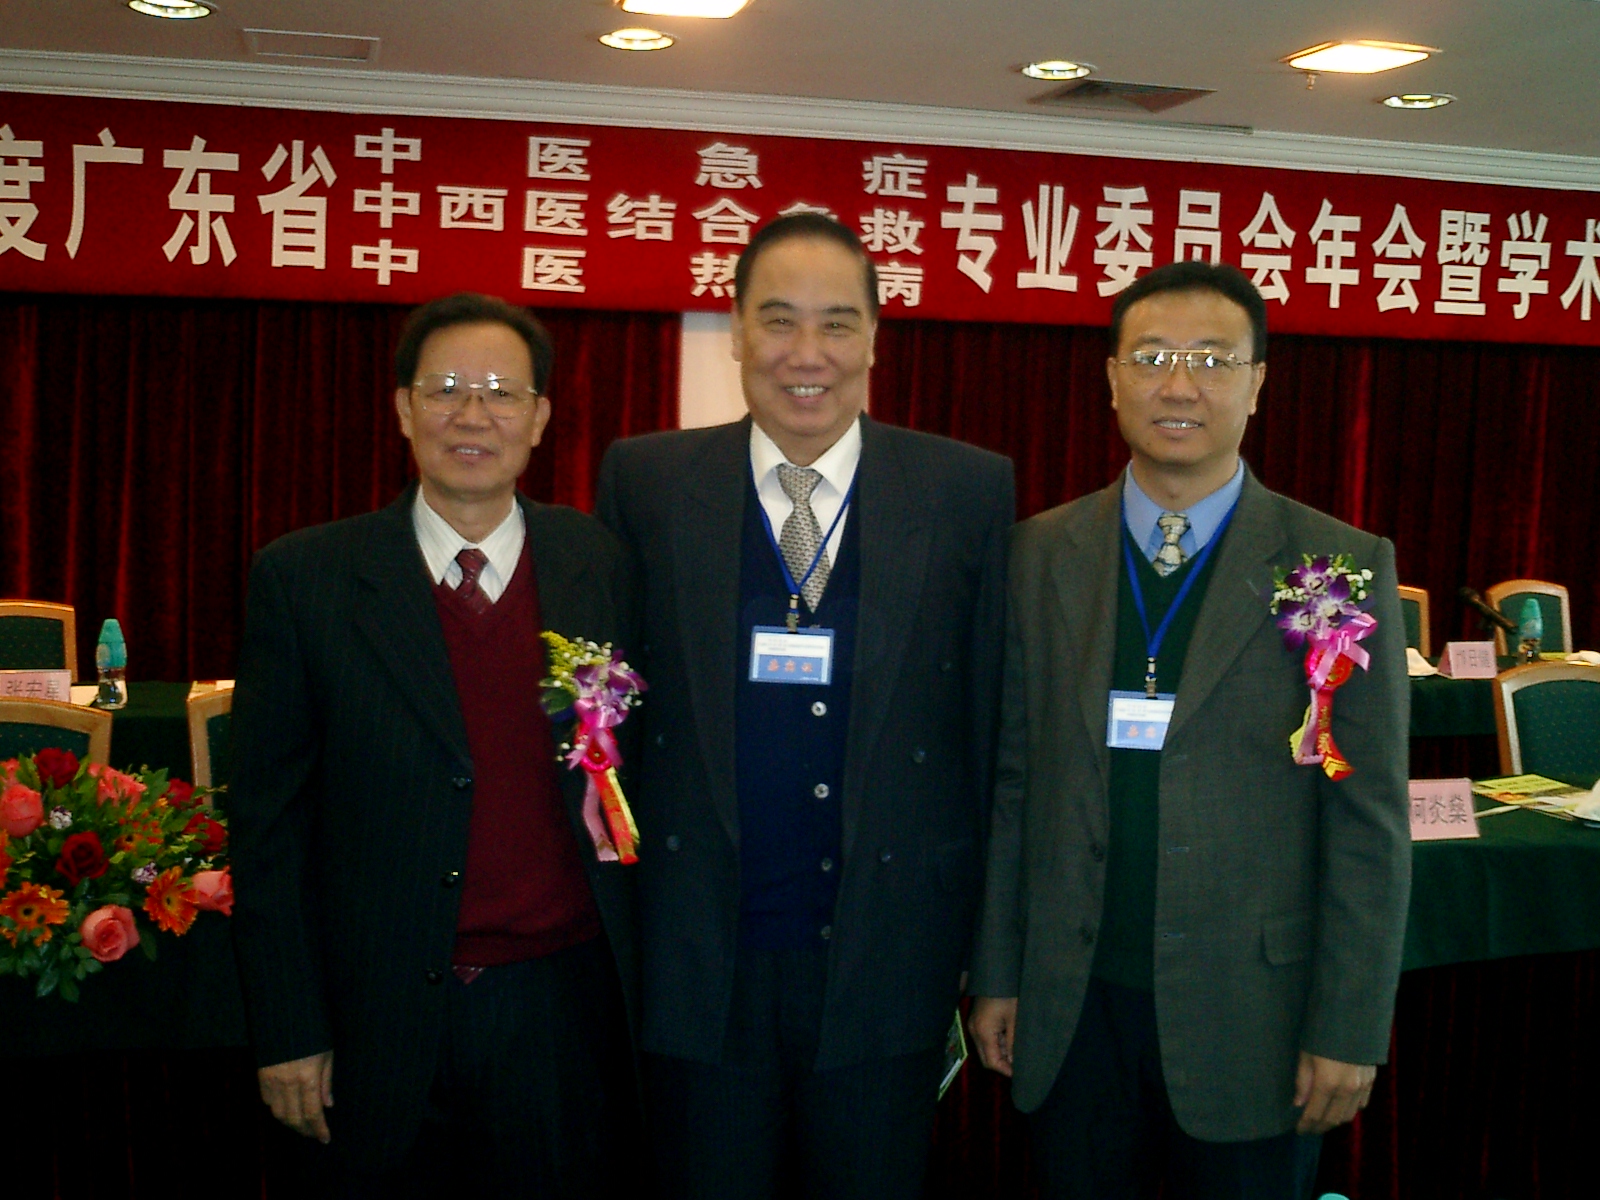 广州中医药大学原校长冯新送教授（左），现任校长徐志伟教授（右）和岑烈芳教授合影